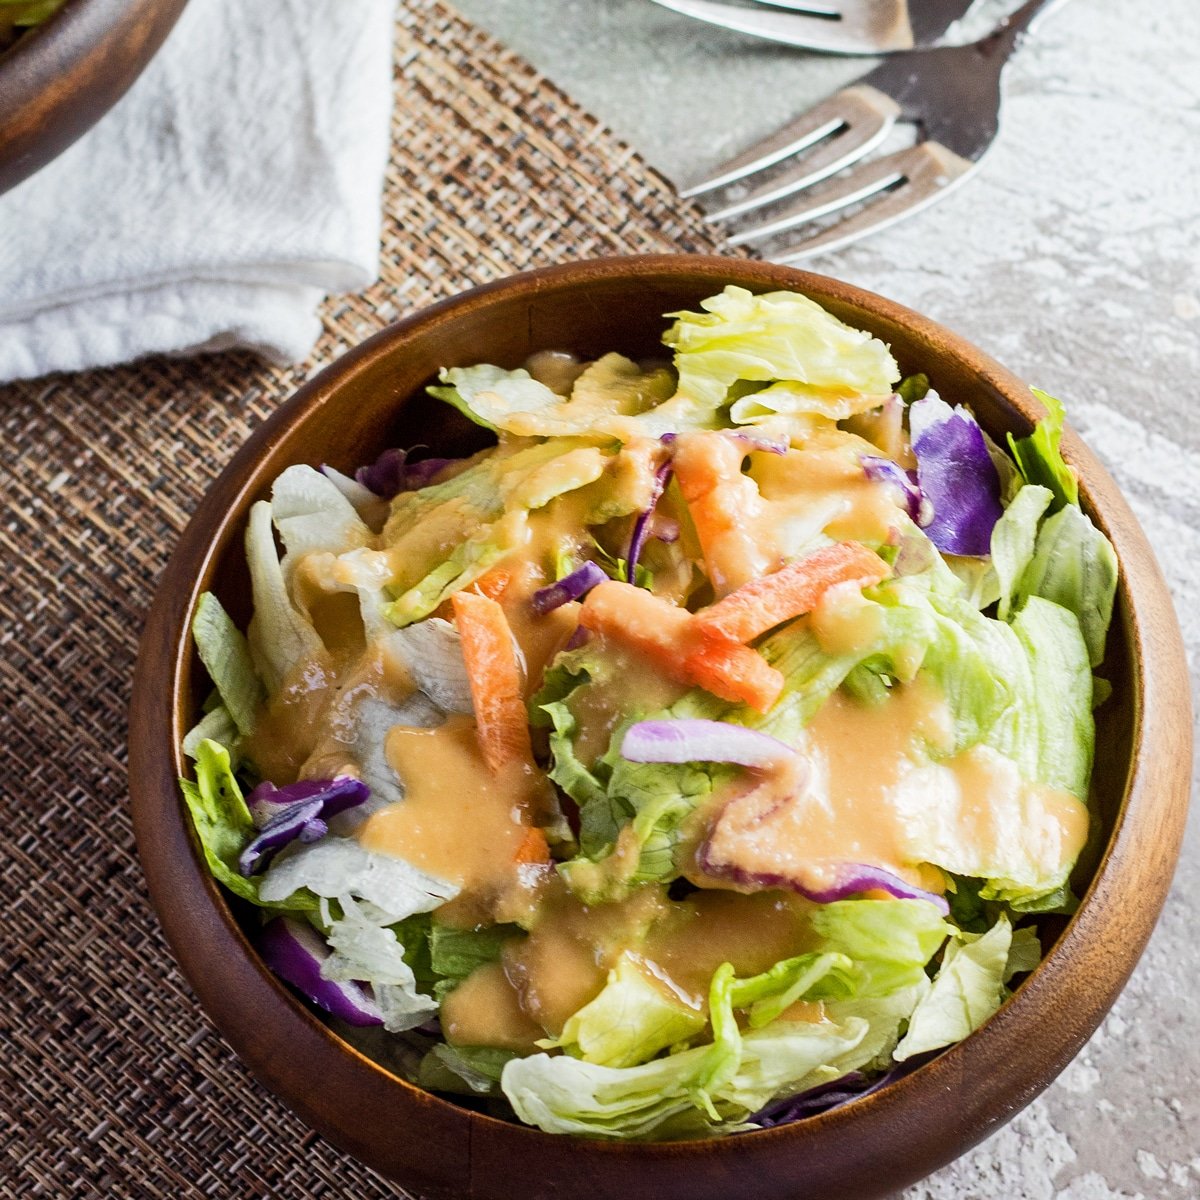 Gambar persegi besar dari saus salad jahe benihana yang disajikan di atas salad dalam mangkuk bambu gelap dengan latar belakang bertekstur ringan.